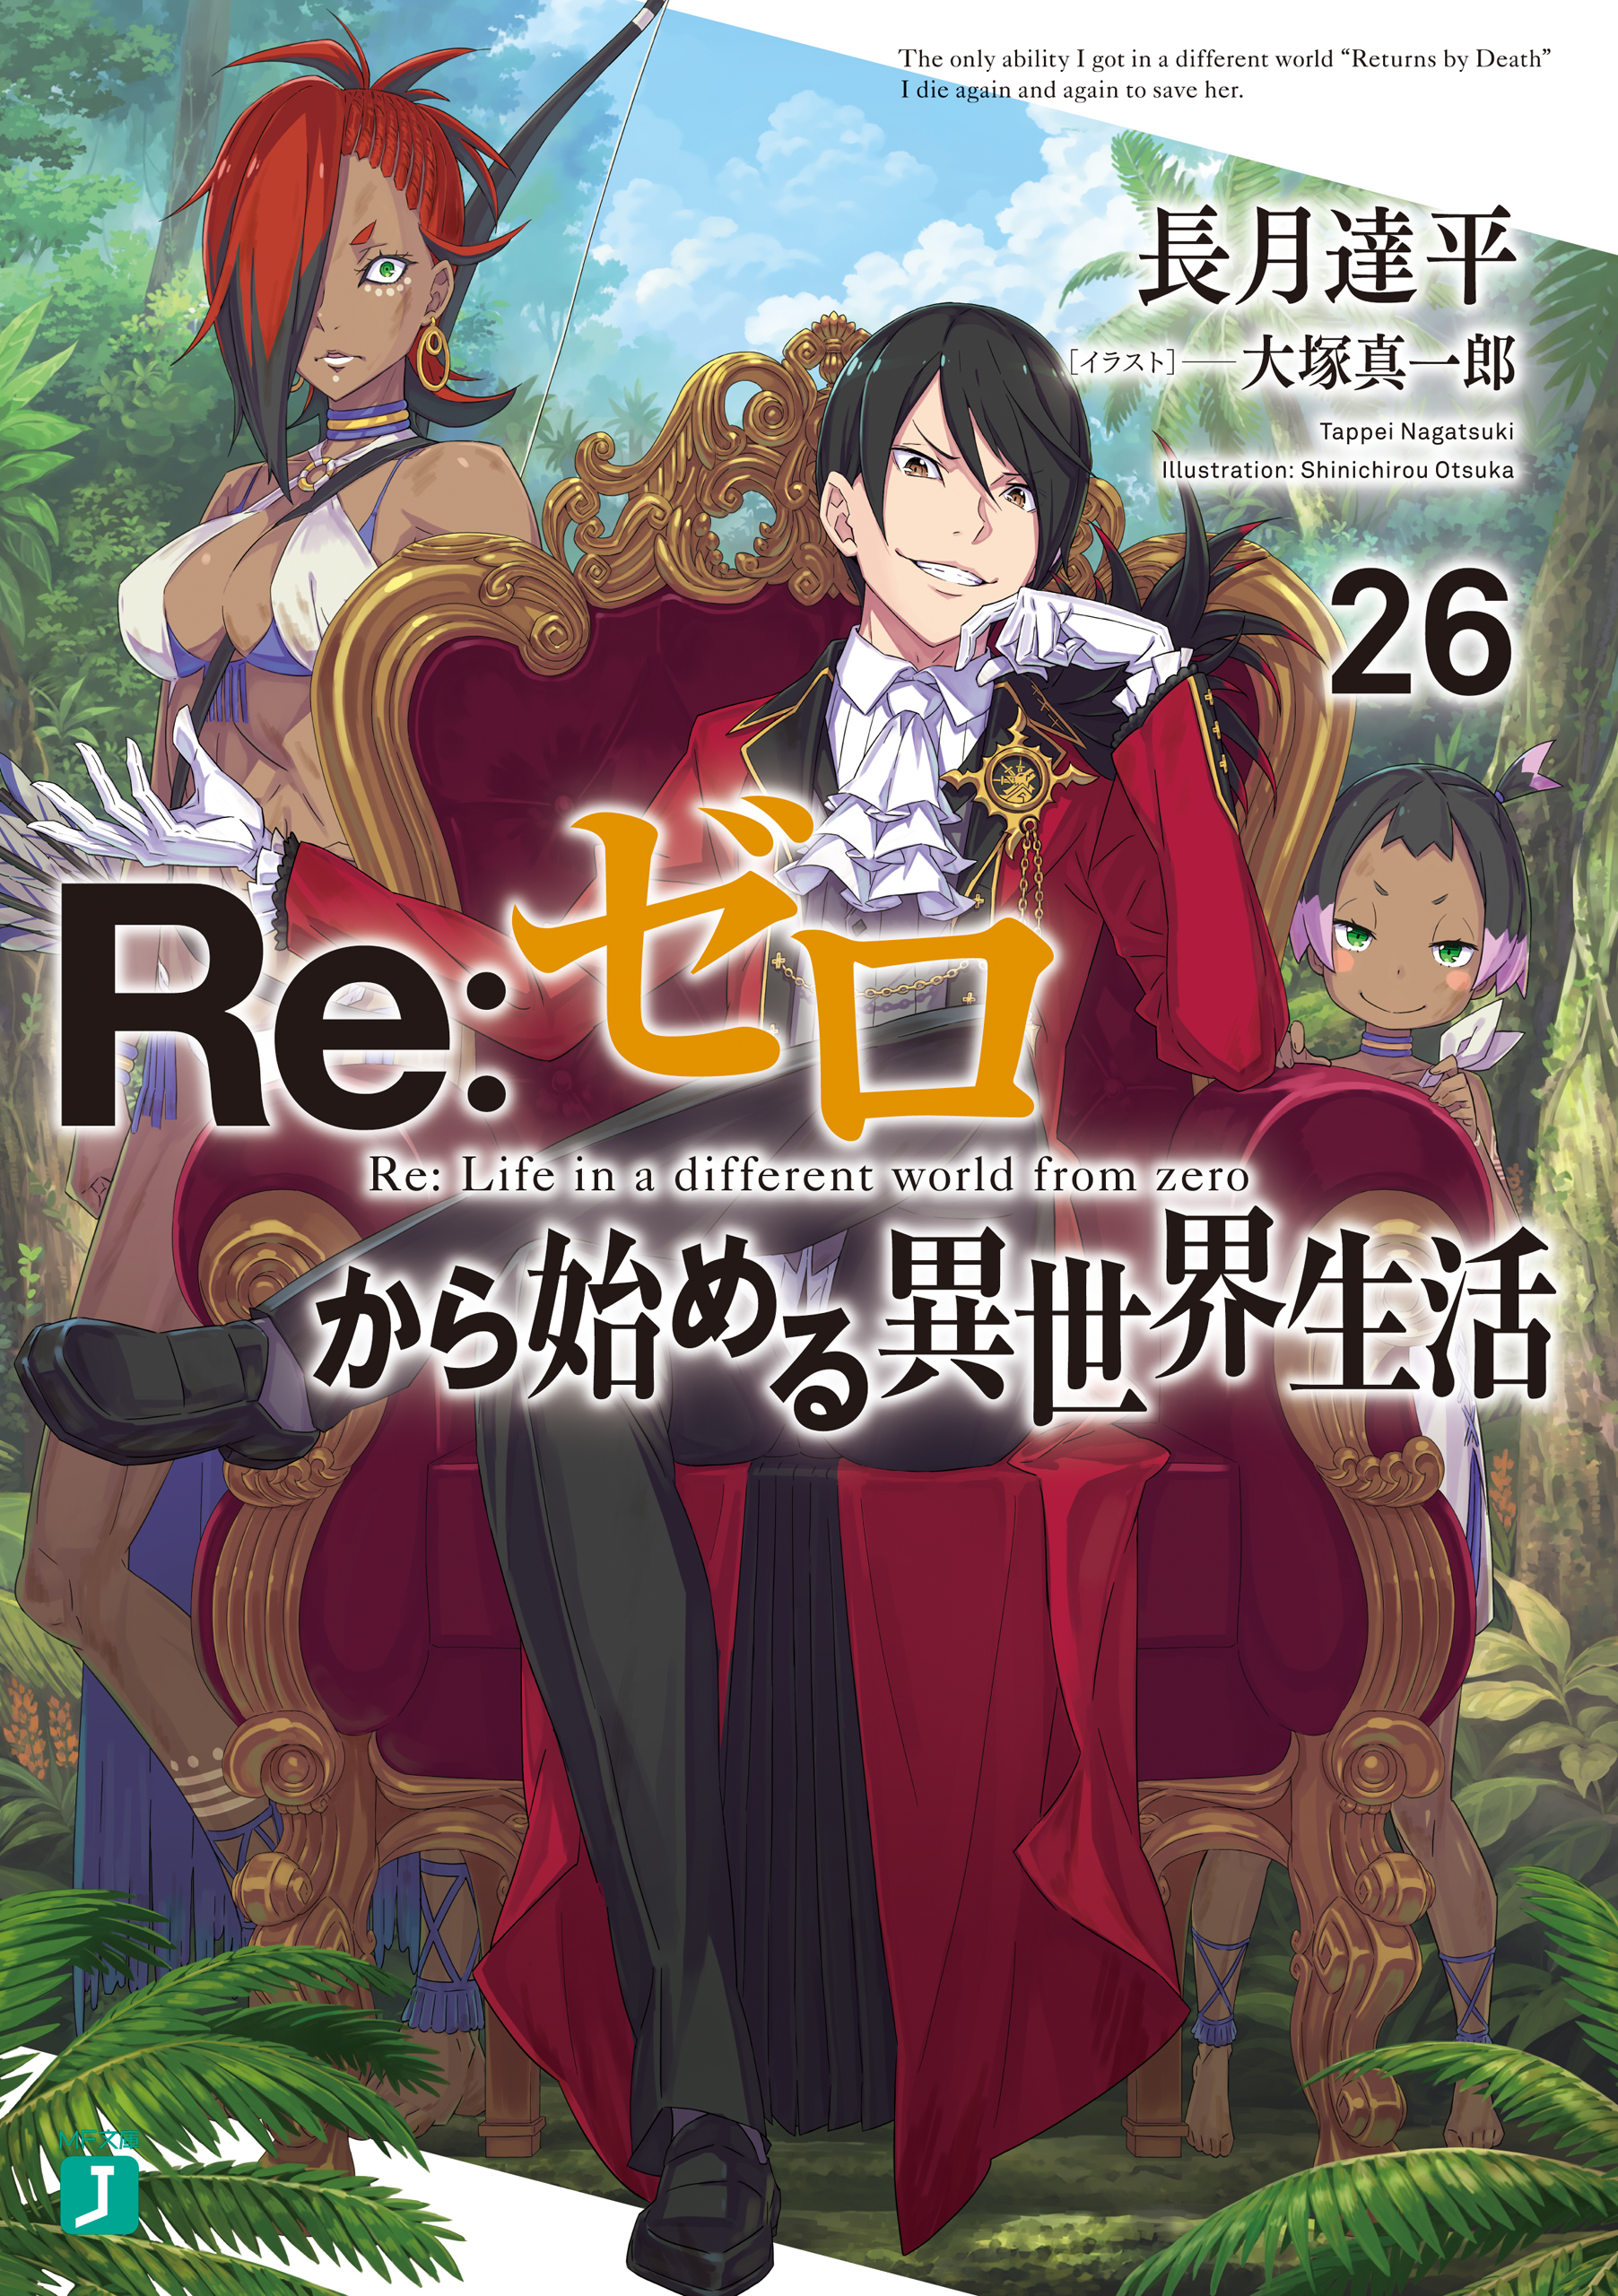 Re:Zero kara Hajimeru Isekai Seikatsu Season 2 - Episode 9 discussion : r/ anime